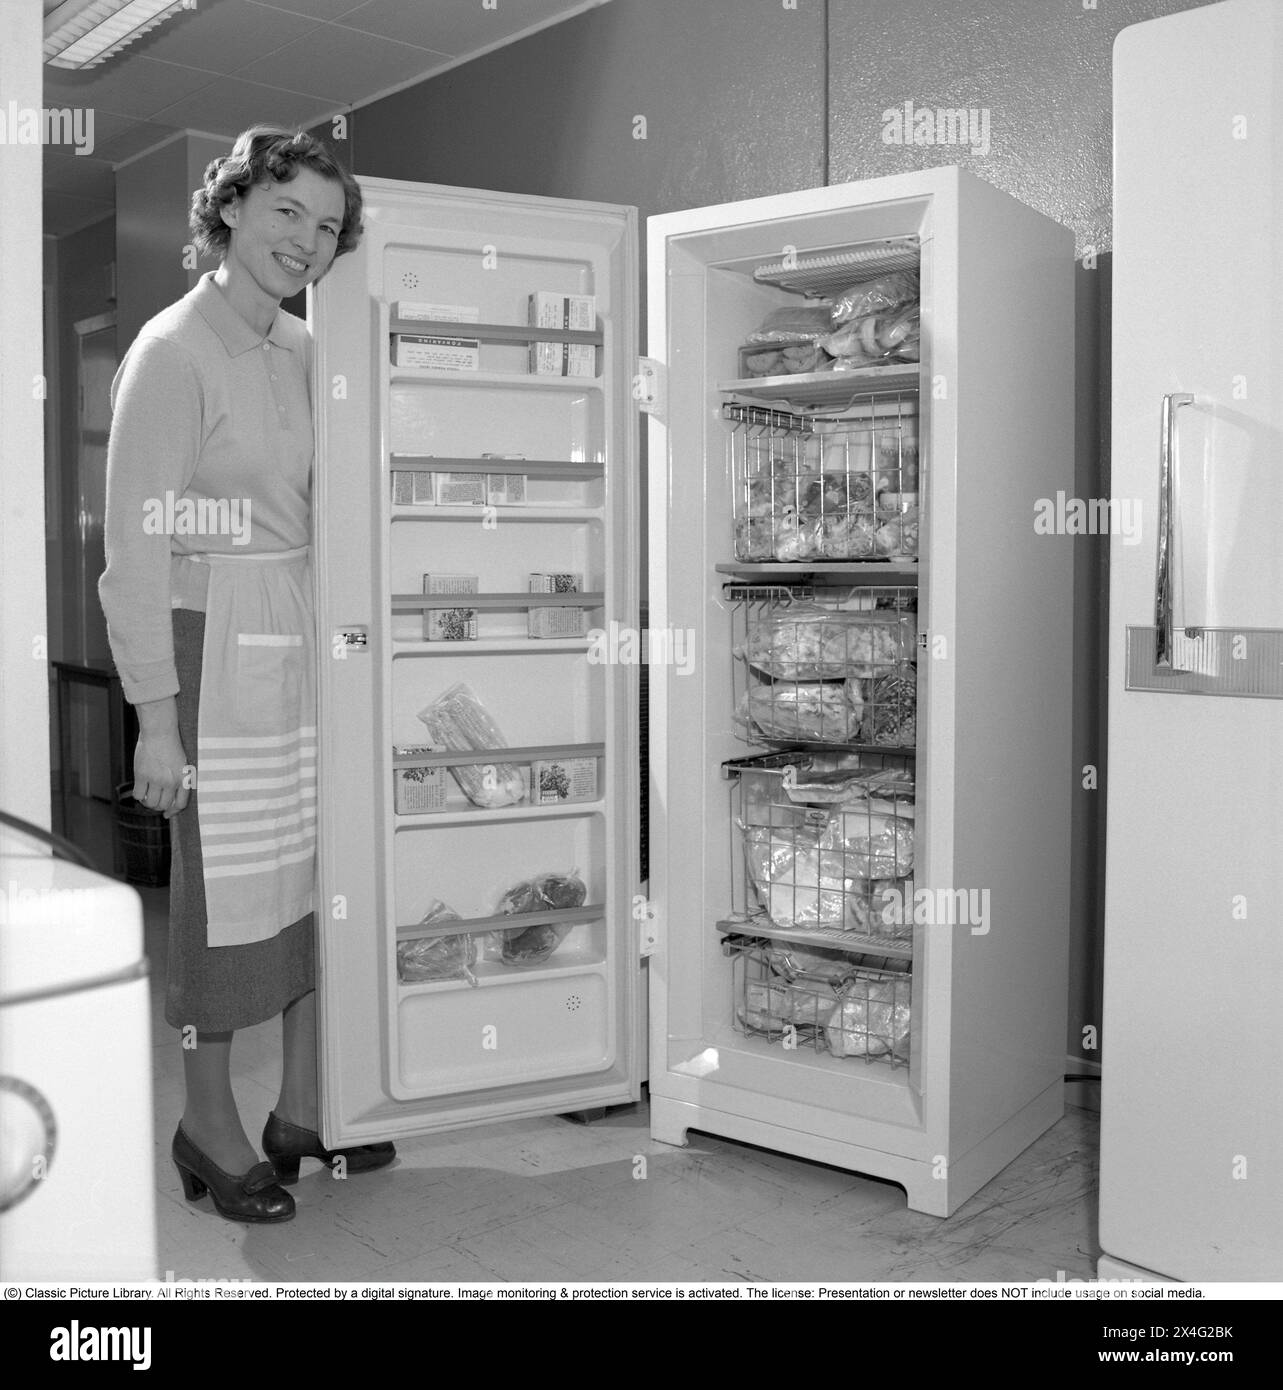 Une femme dans un congélateur avec des produits congelés, du poulet, du poisson dans des emballages. Un congélateur modèle debout avec des étagères et des tiroirs et une porte pour l'ouvrir. Suède 1960. Conard 4188 Banque D'Images